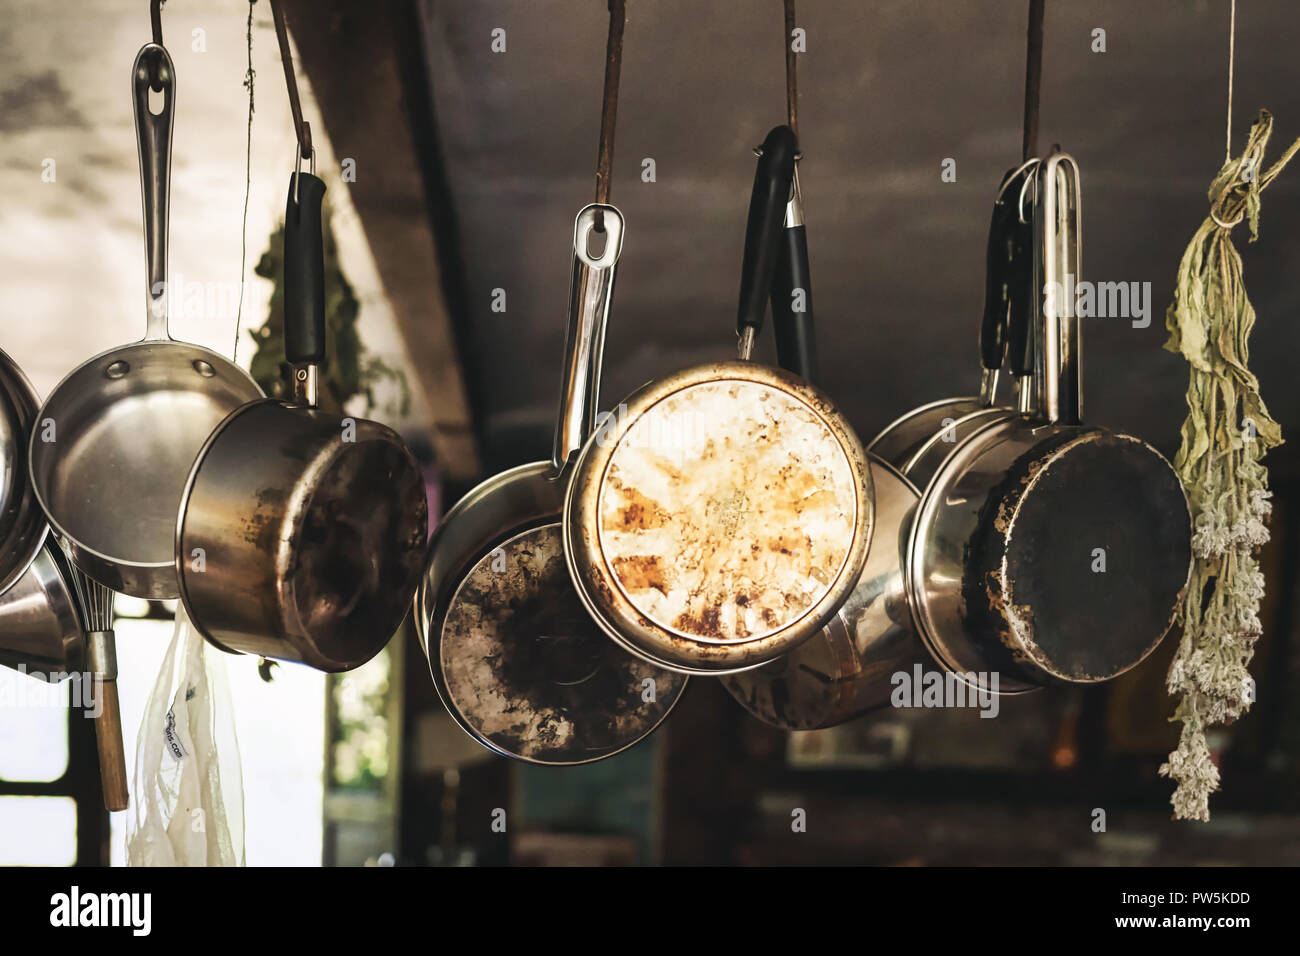 Töpfe und Pfannen auf hängenden Haken in einer Farm Küche Stockfotografie -  Alamy